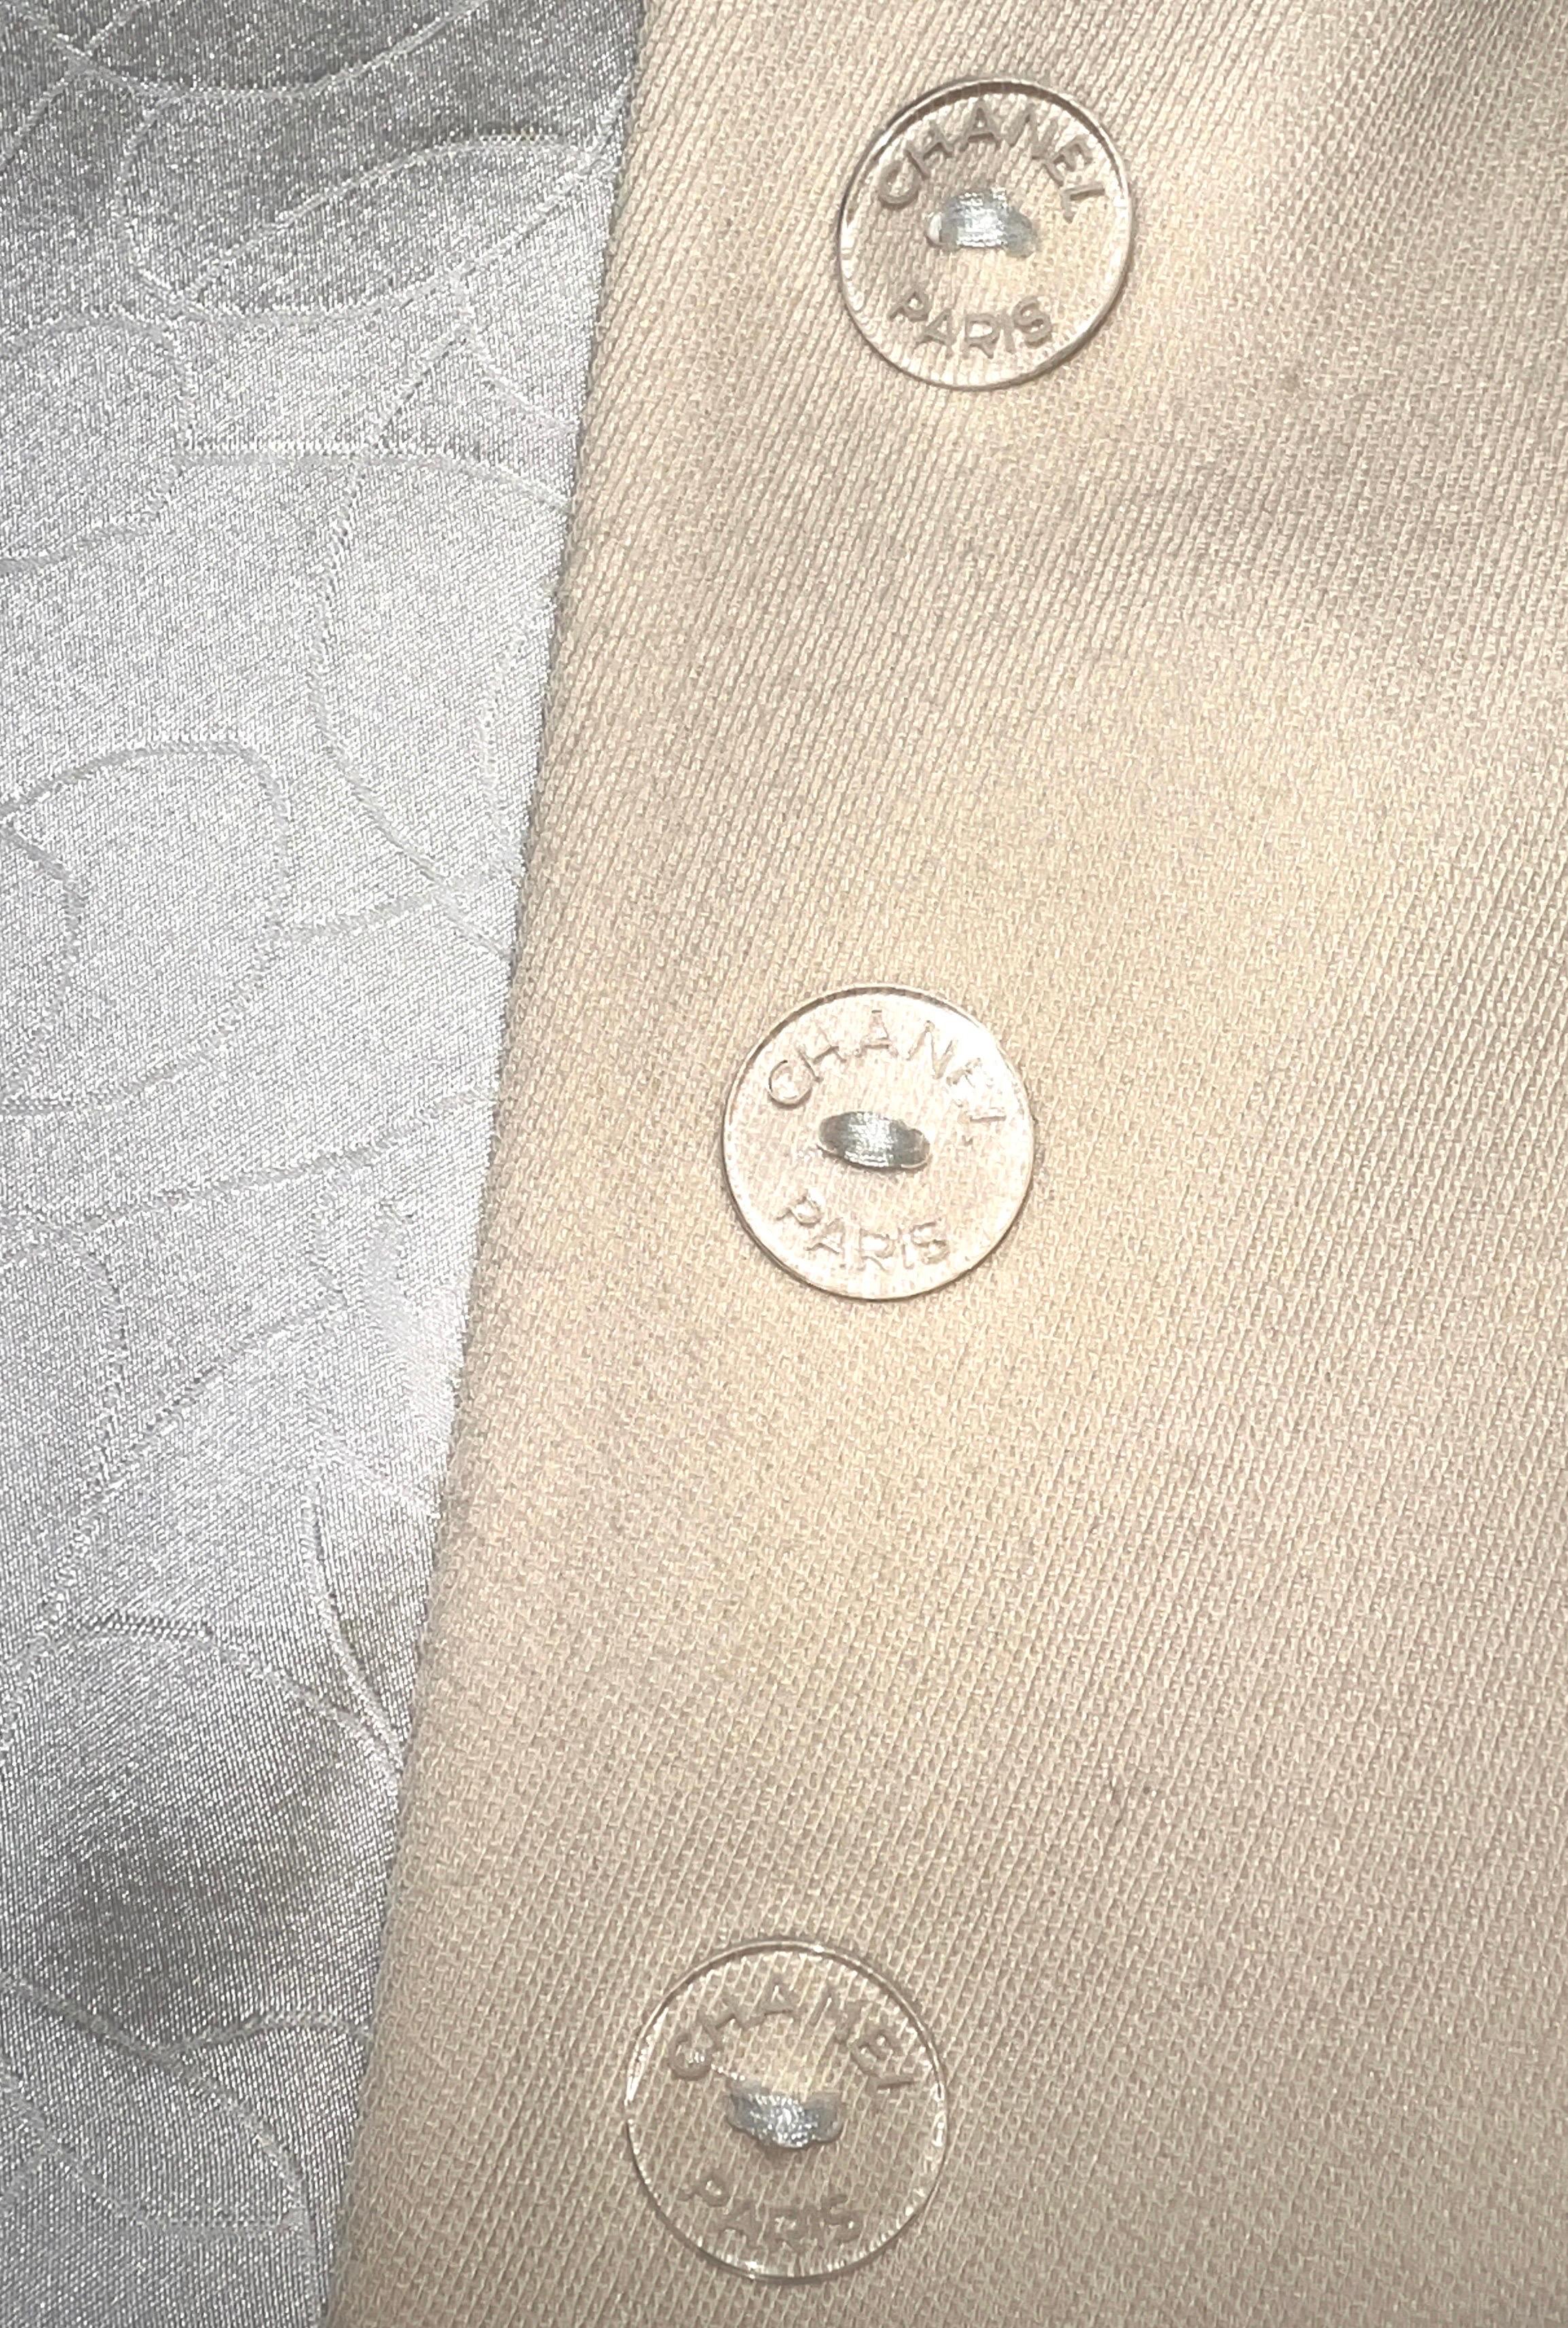 CHANEL Signatur Monochrome Wolle &amp; Tweed Jacke Blazer 38 im Angebot 2